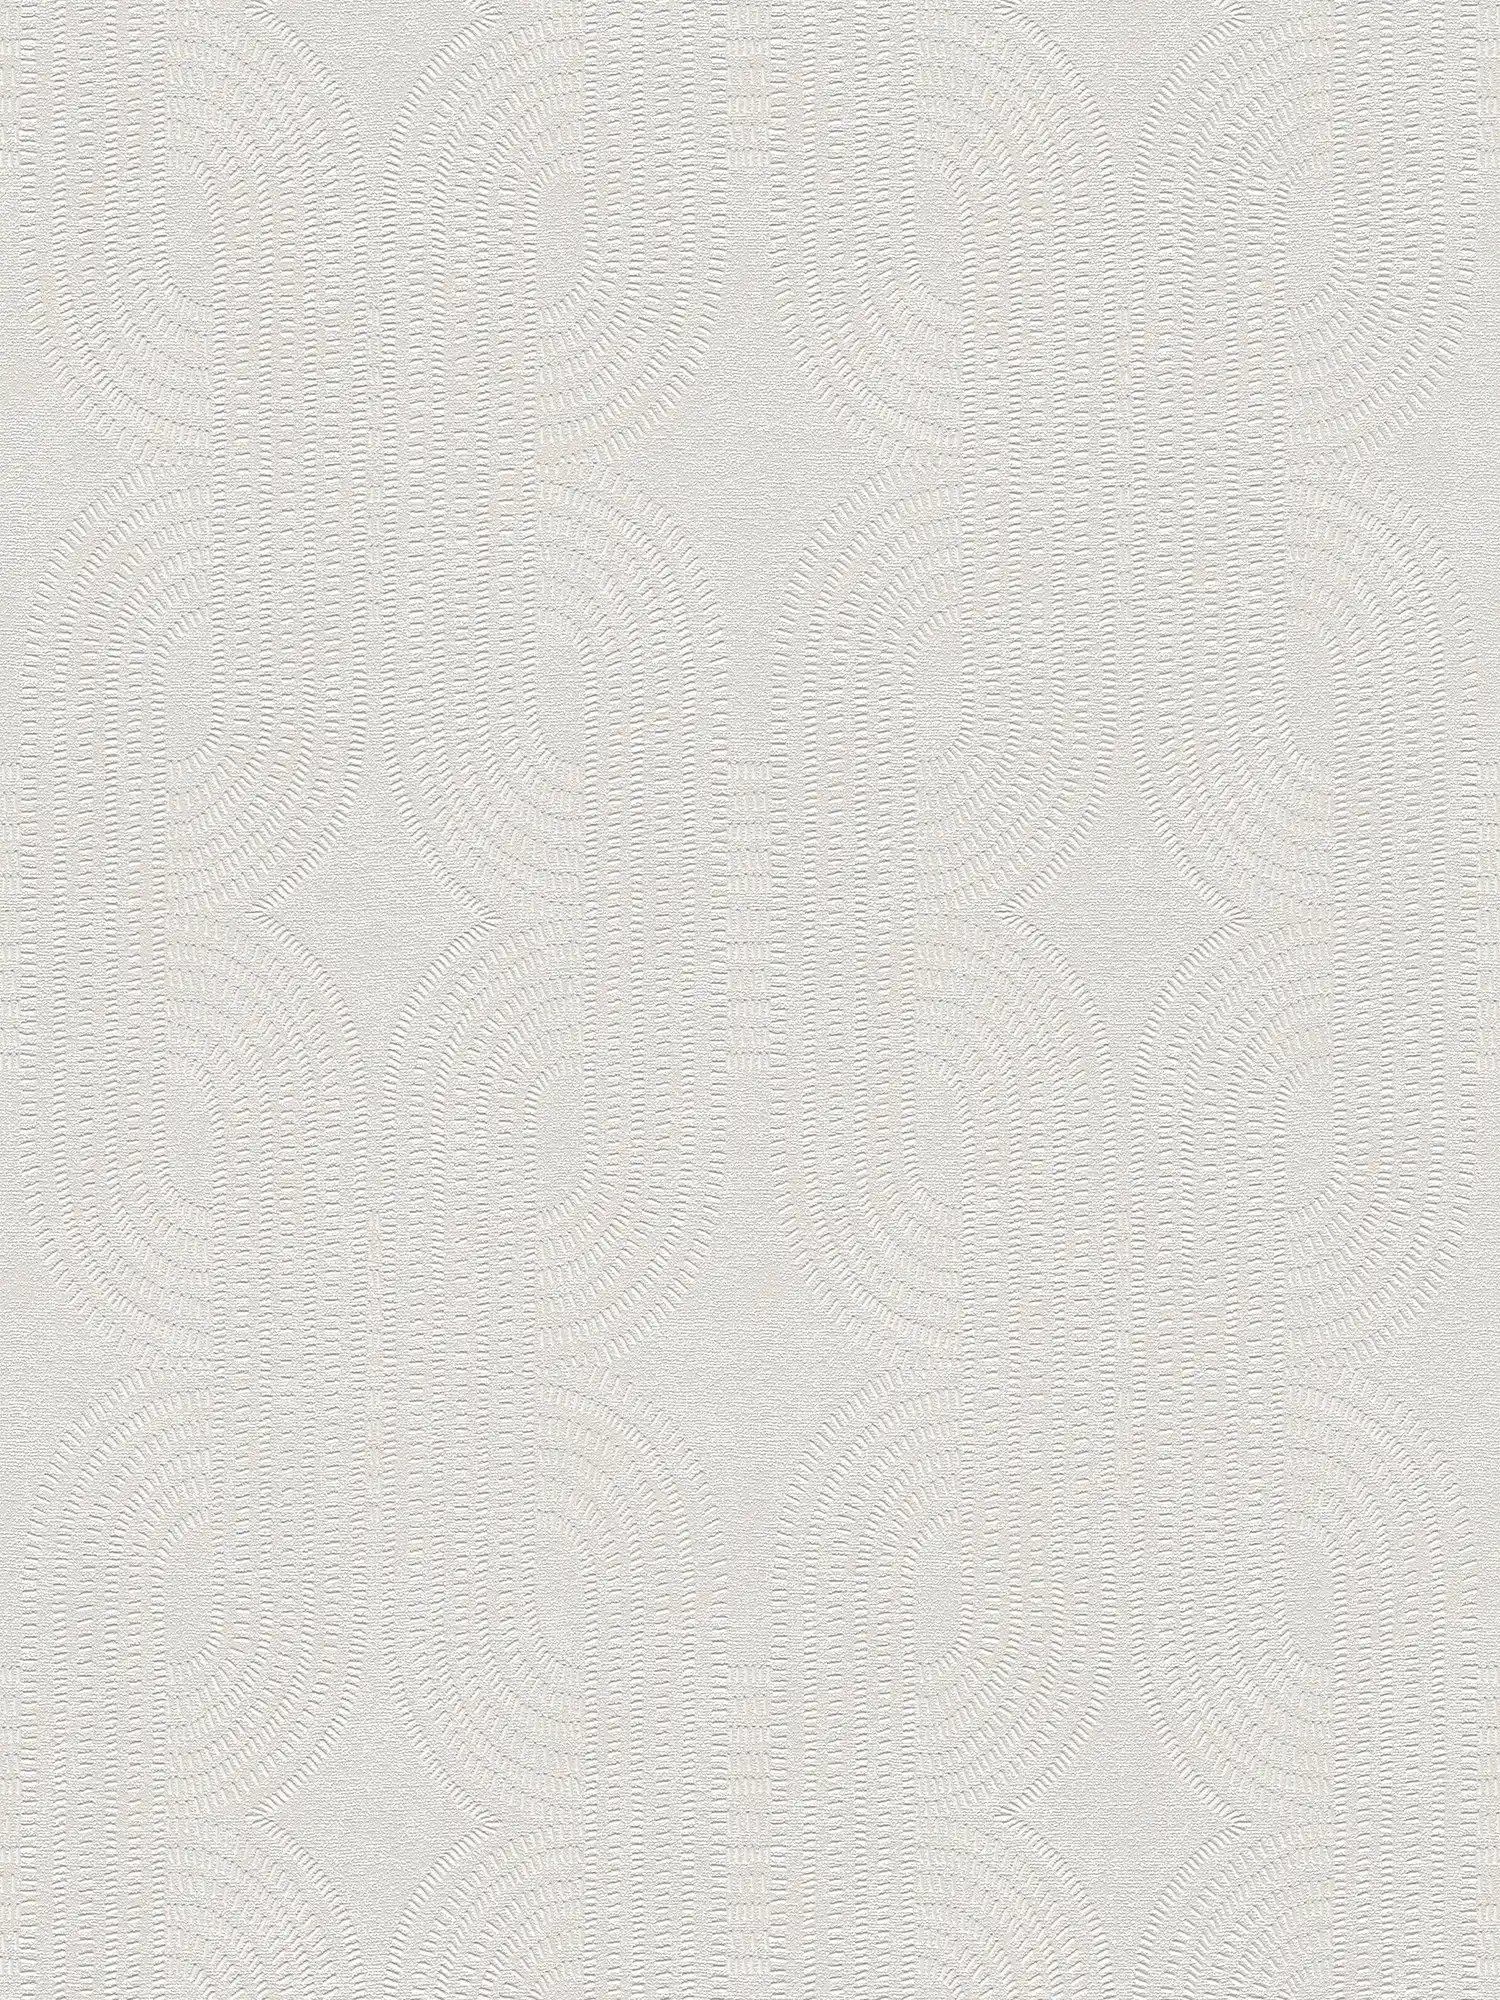 Grafische Retro Vliestapete – Weiß, Grau
